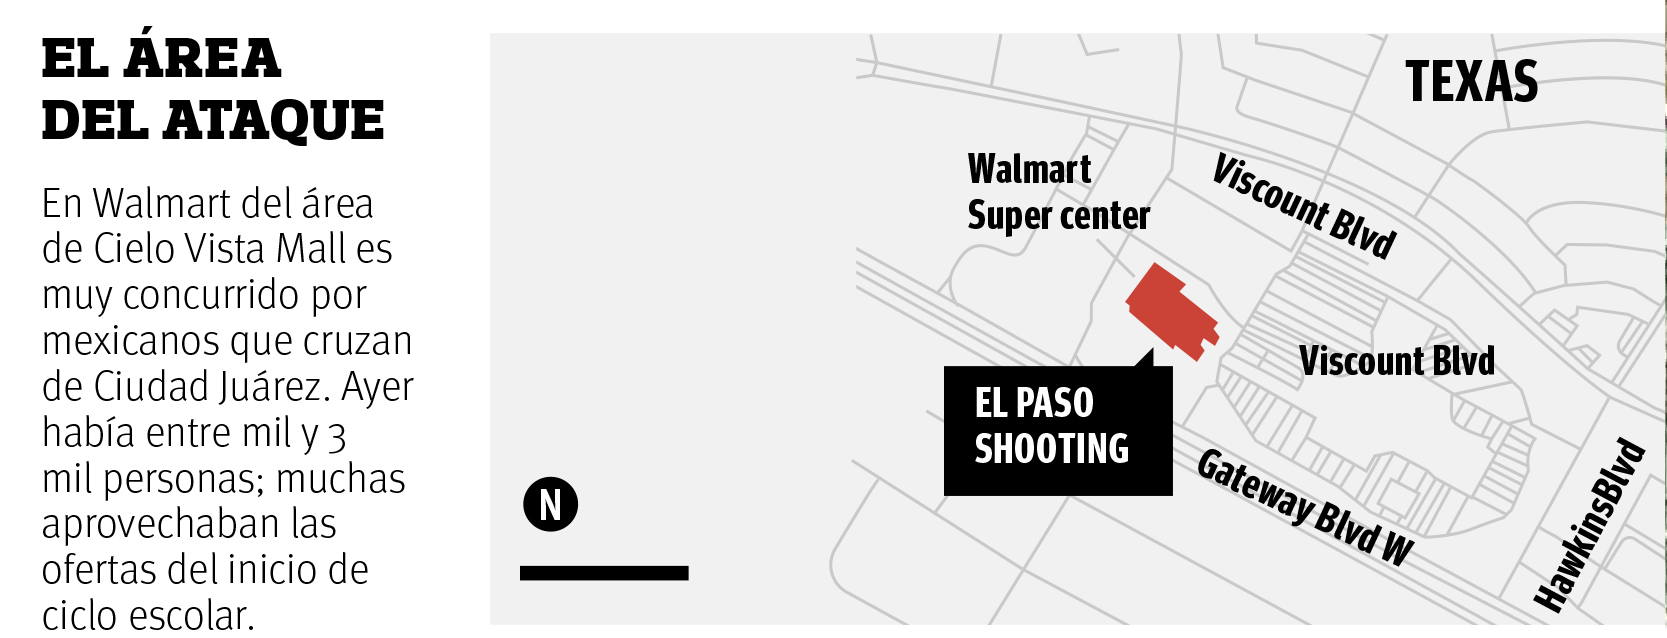 $!Deja masacre en El Paso 20 muertos y 26 heridos